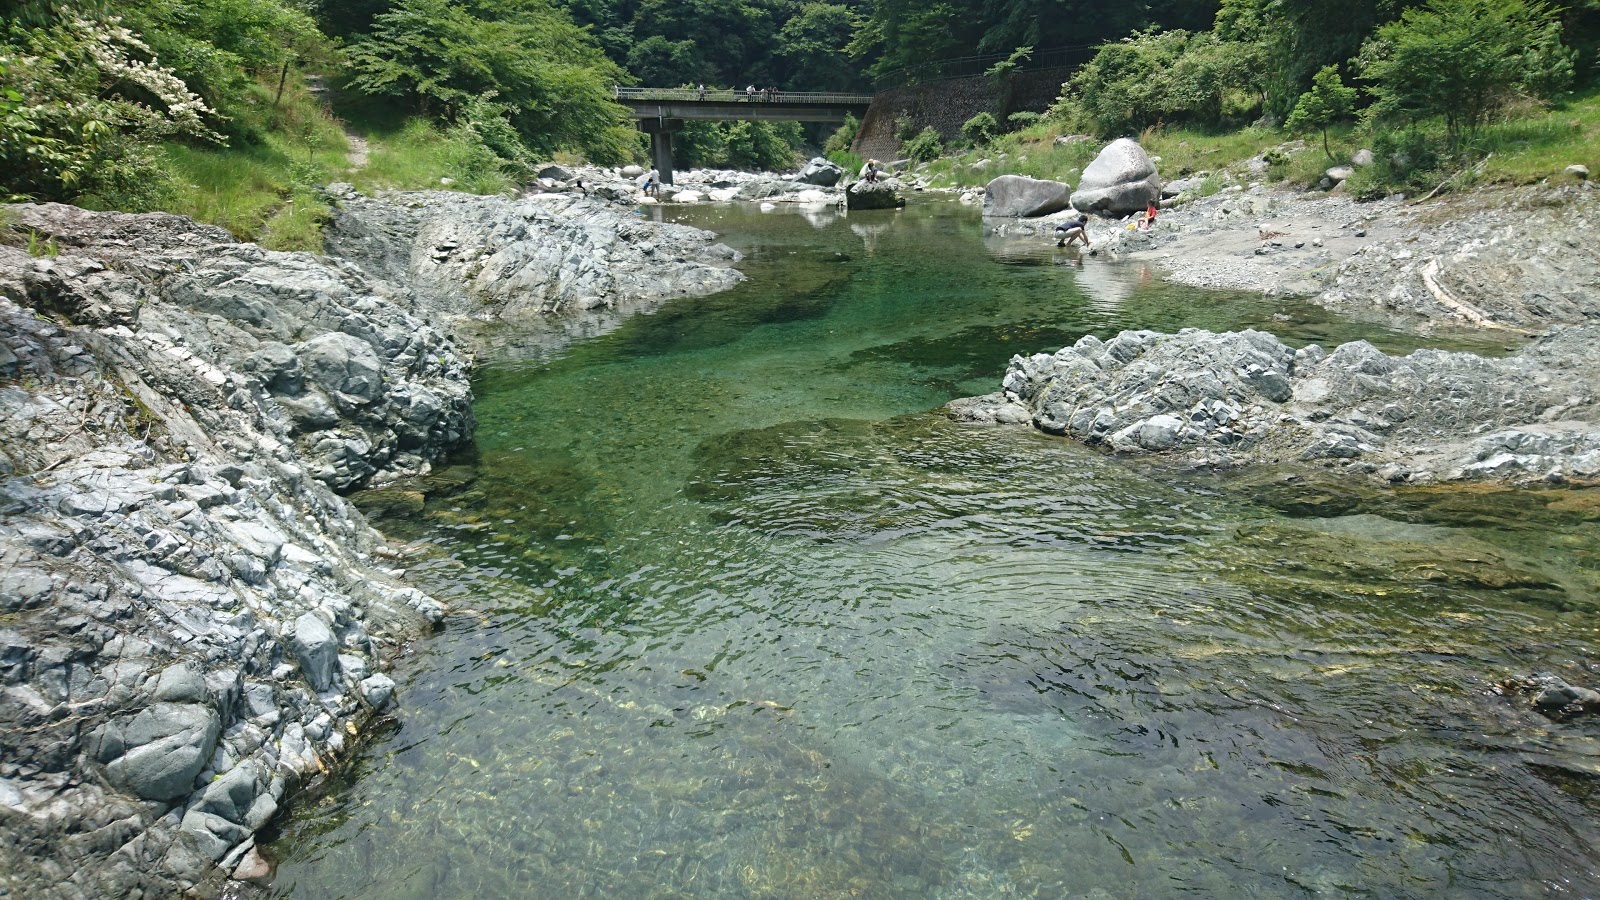 神奈川県 丹沢の中川温泉で川遊び 町立中川温泉ぶなの湯 がとても便利だった話 好奇心旺盛なアマツ人blog